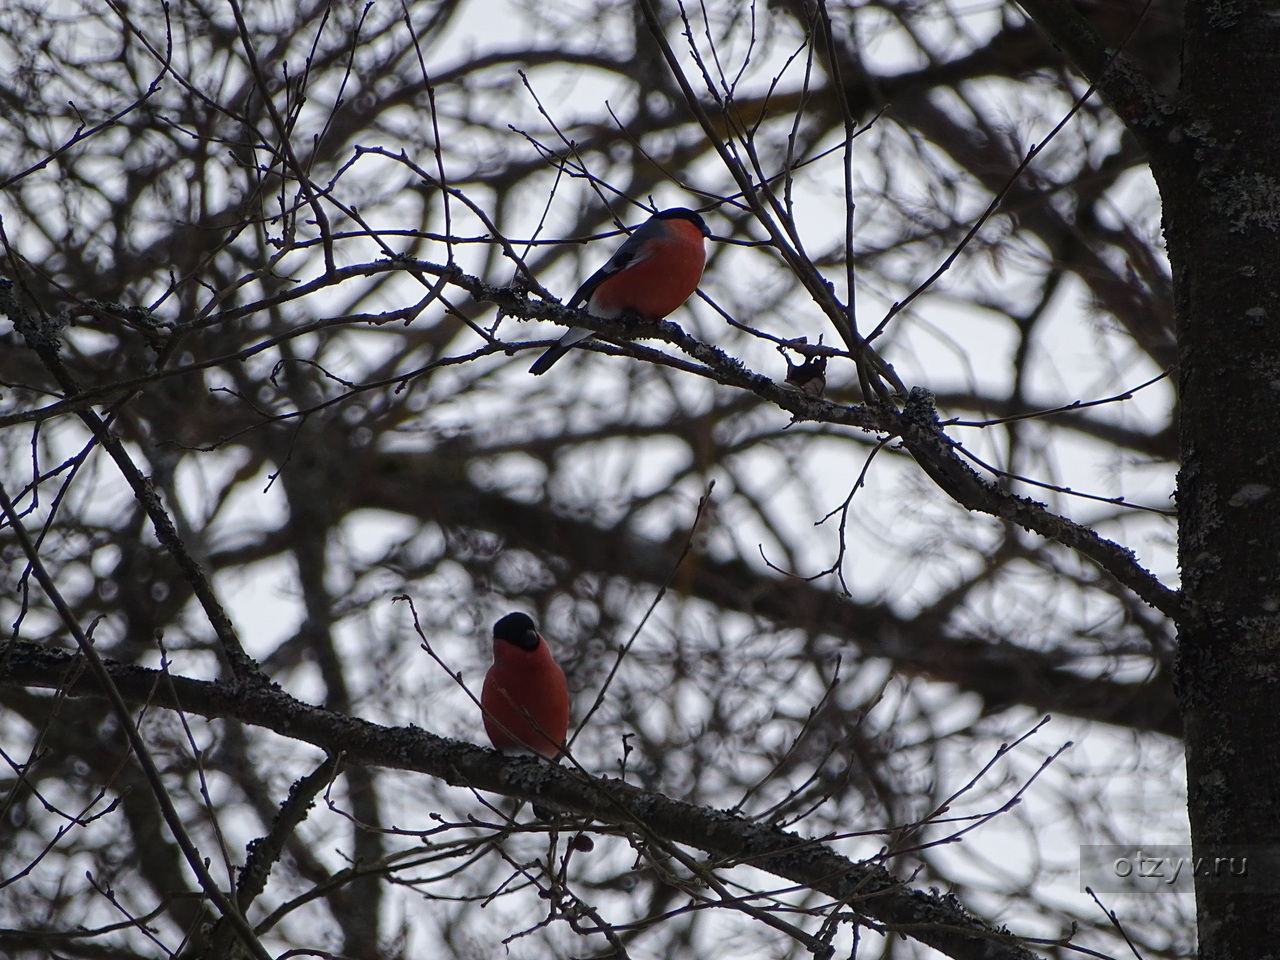 птицы санкт петербурга фото с названиями зимой